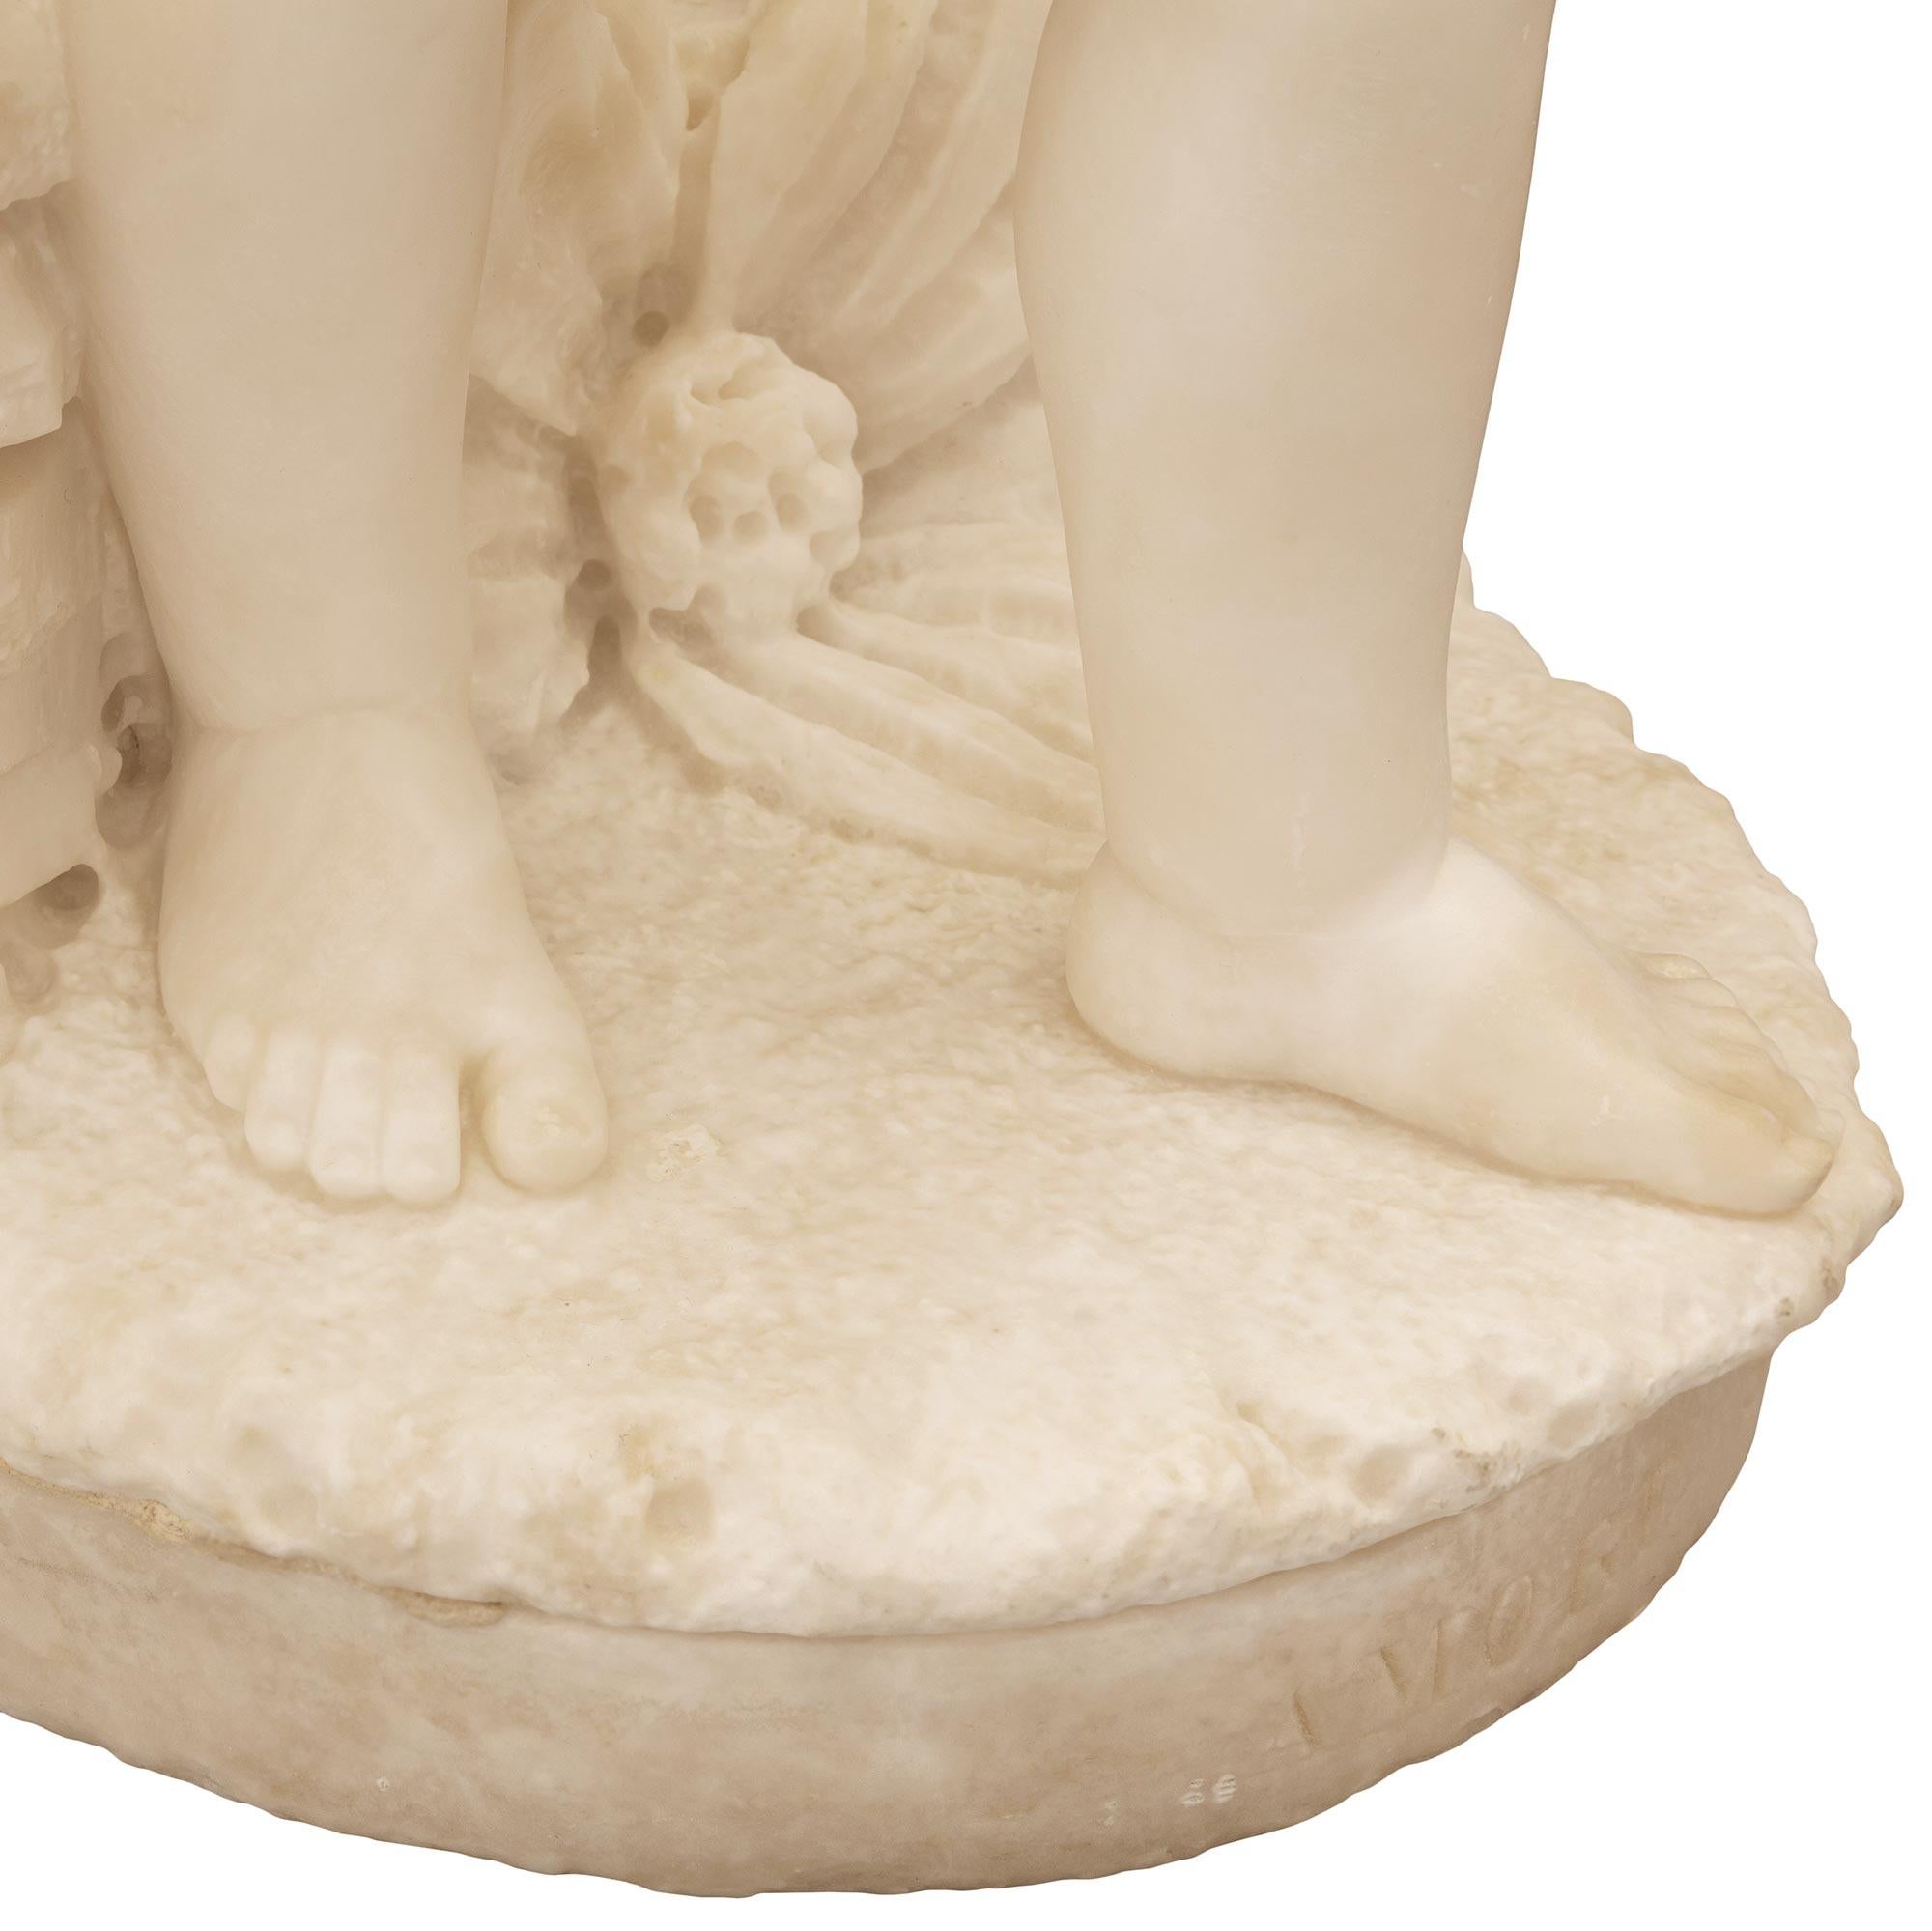 Italian 19th Century White Carrara Marble Statue Titled “Amore Sdegnato” For Sale 8